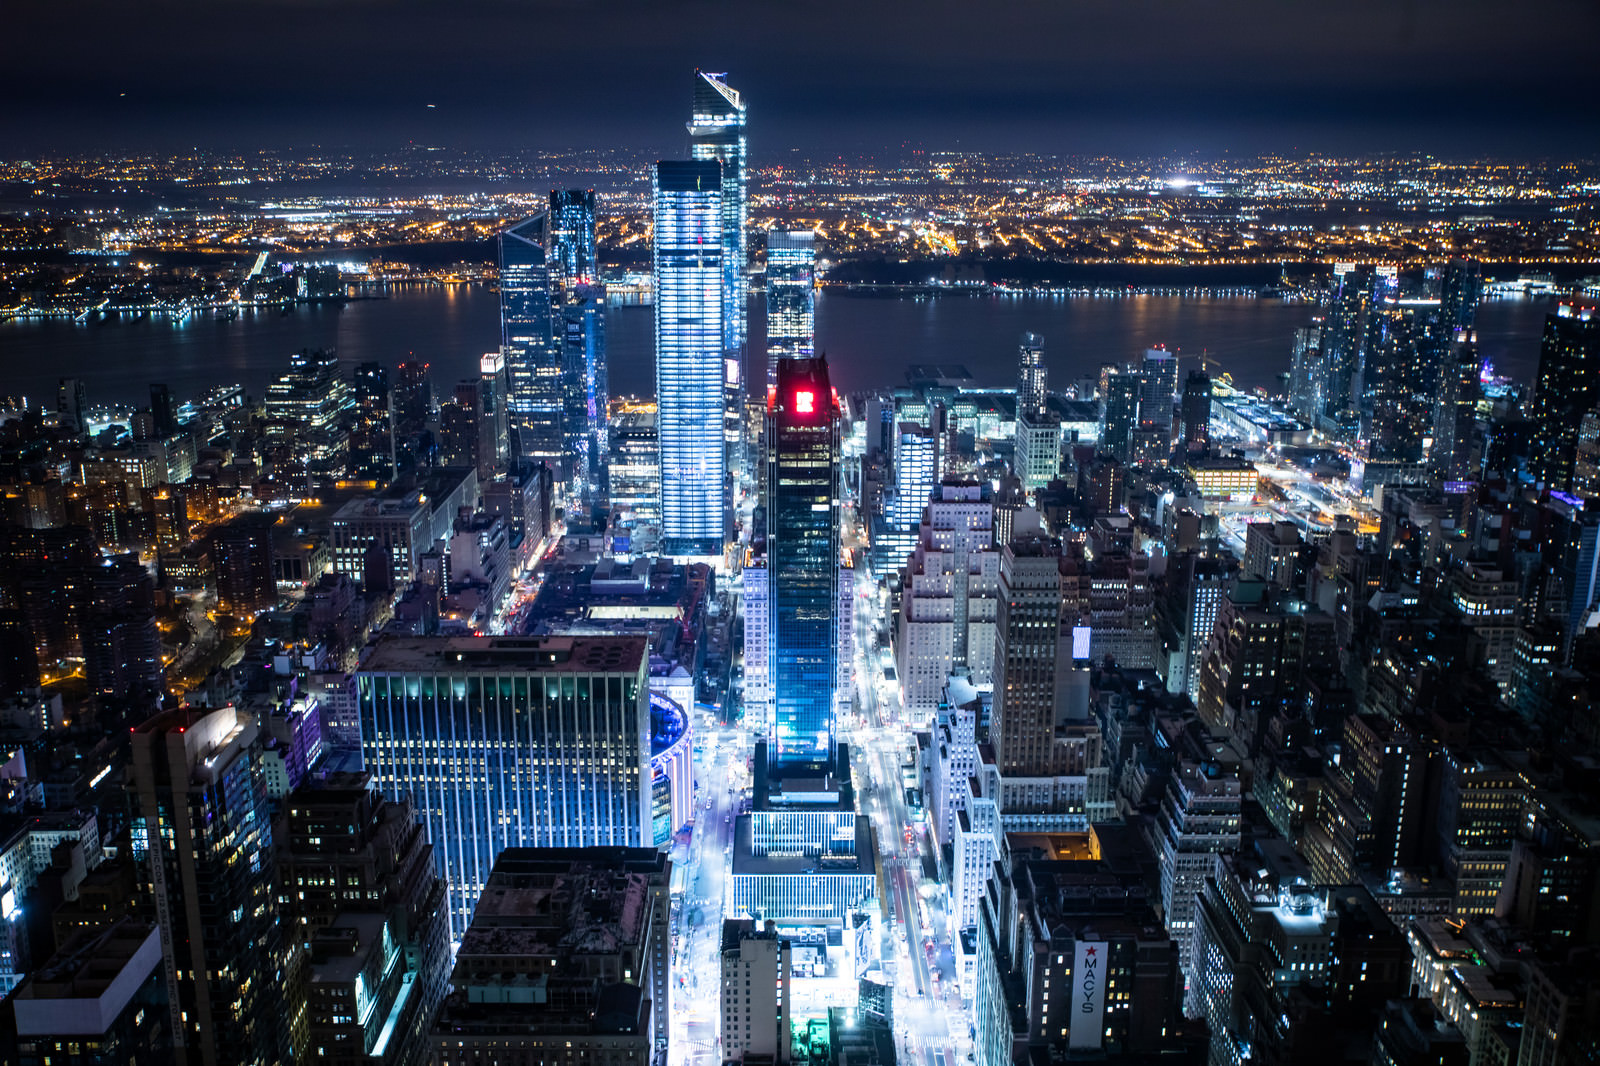 ニューヨークの夜景に浮かび上がる高層ビルの写真 画像 を無料ダウンロード フリー素材のぱくたそ